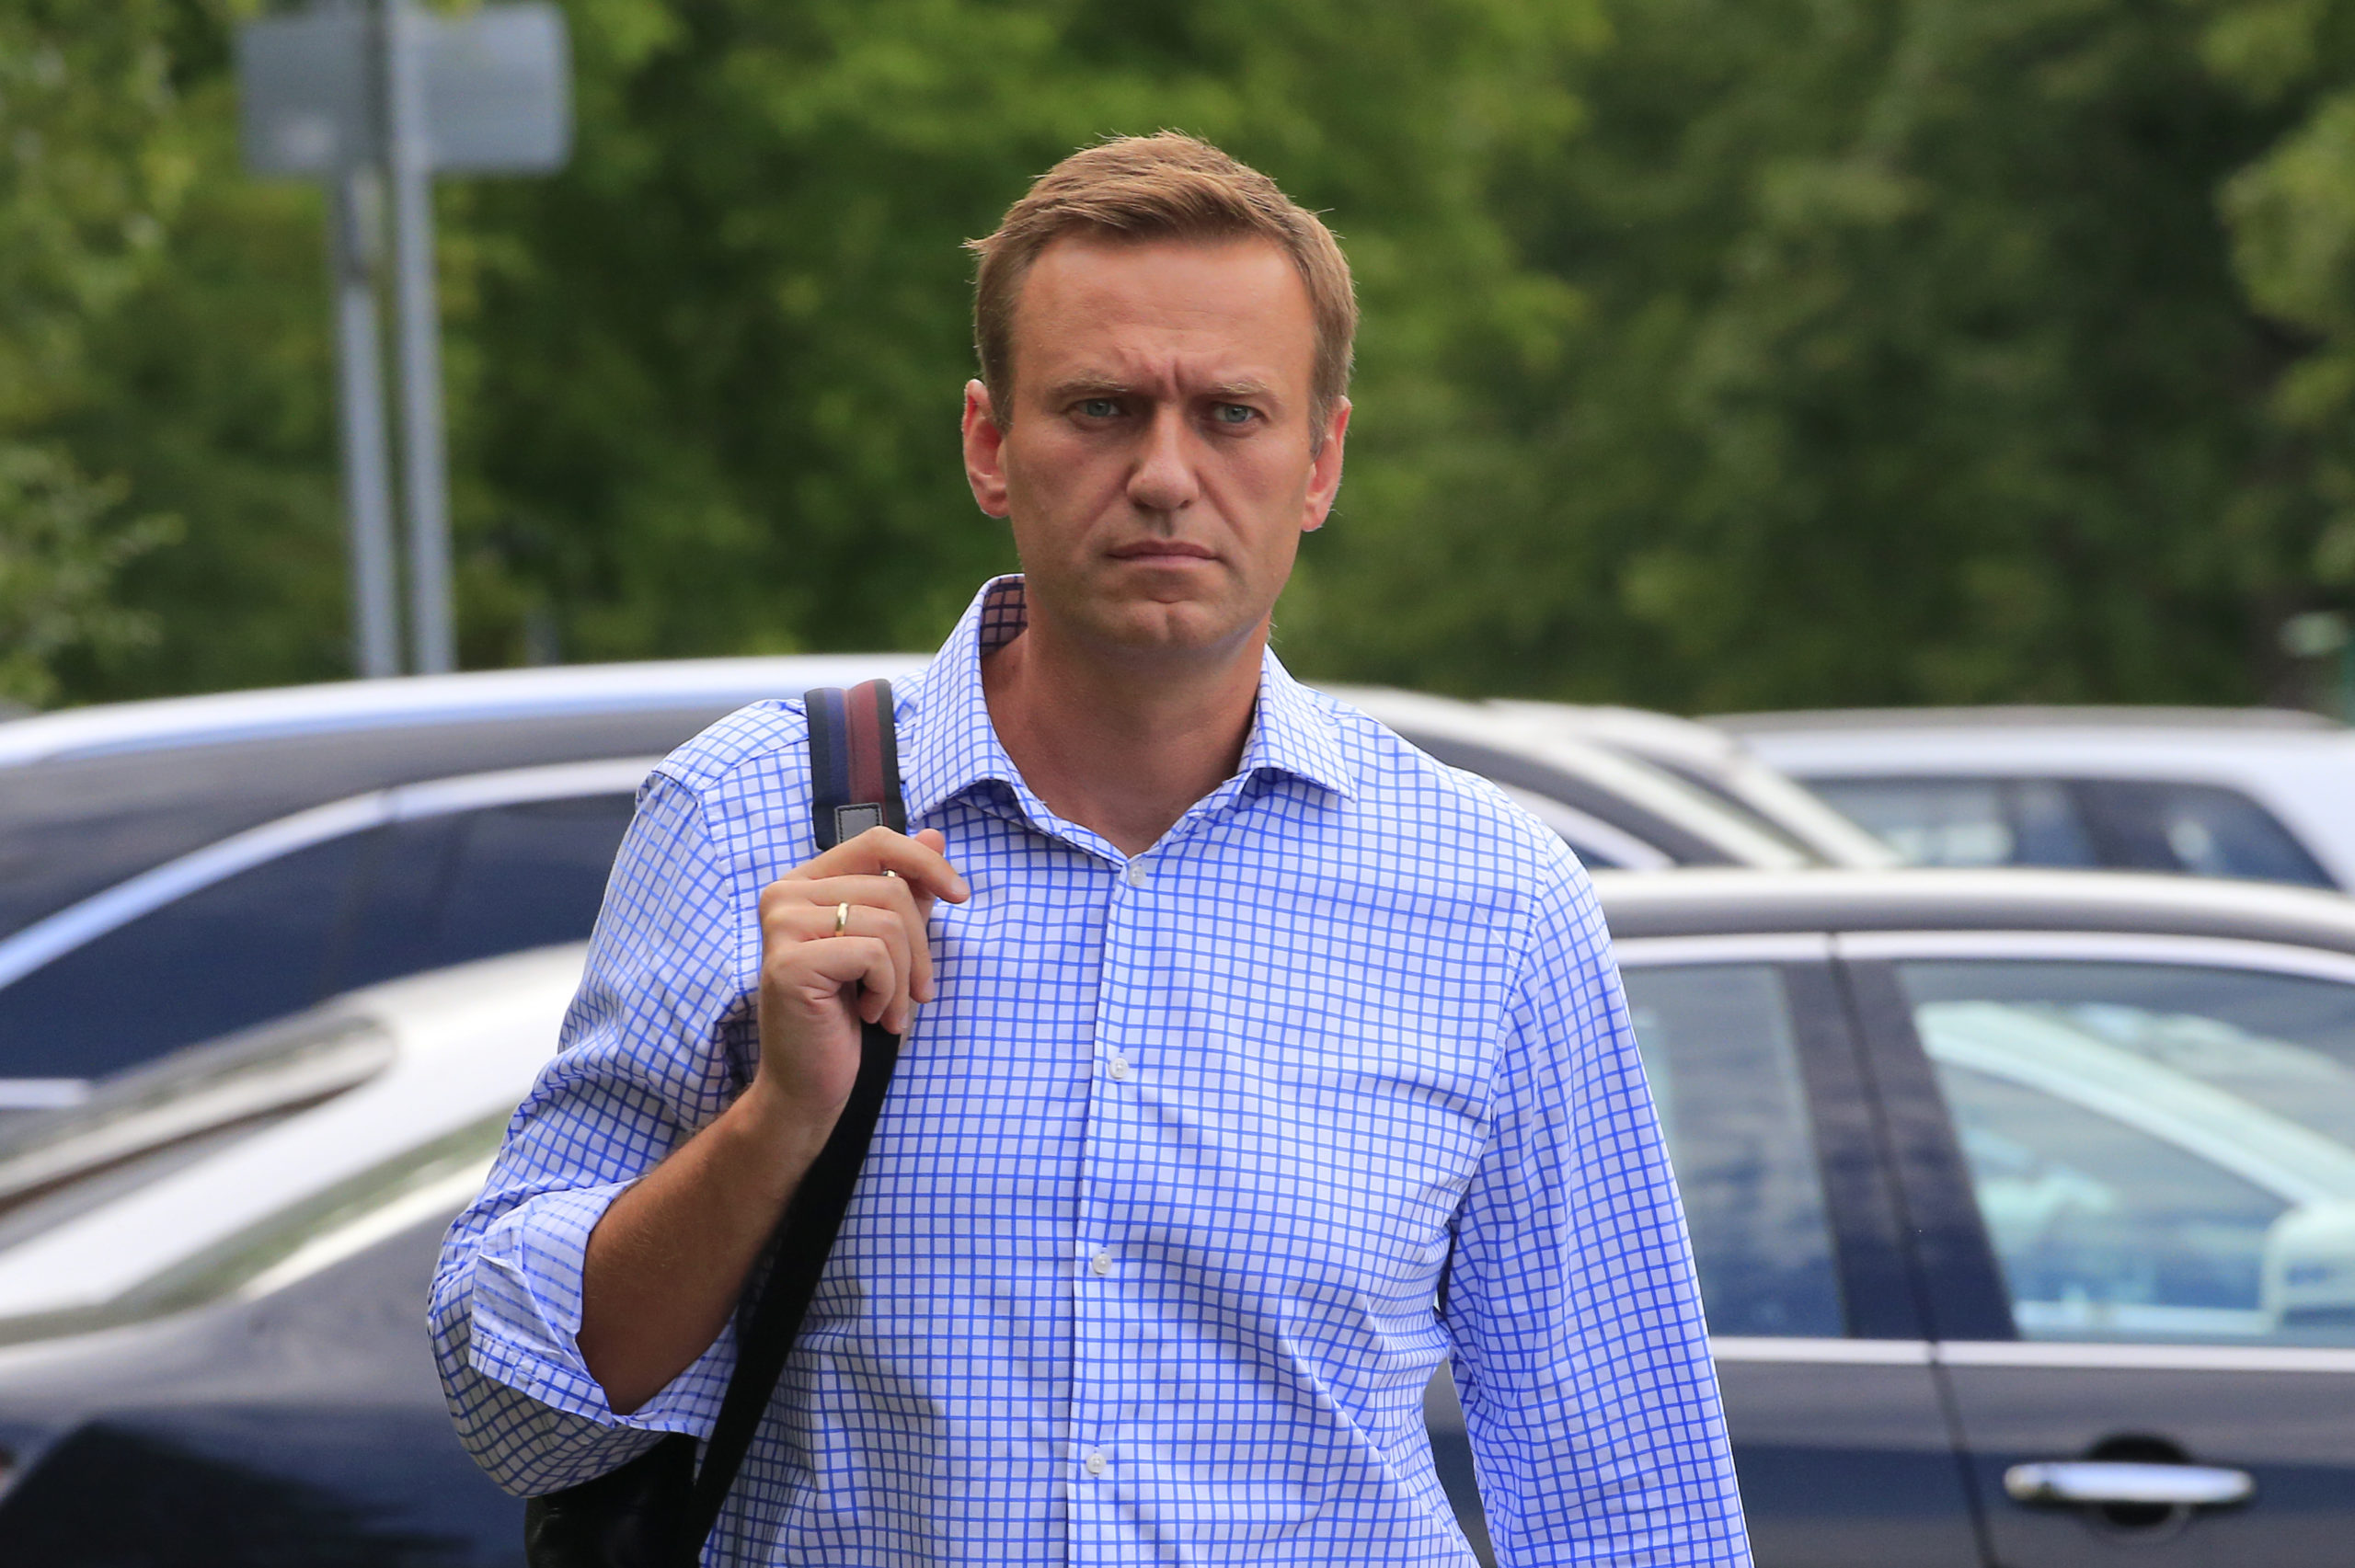 Deux laboratoires français et suédois confirment l'empoisonnement de Navalny, selon Berlin